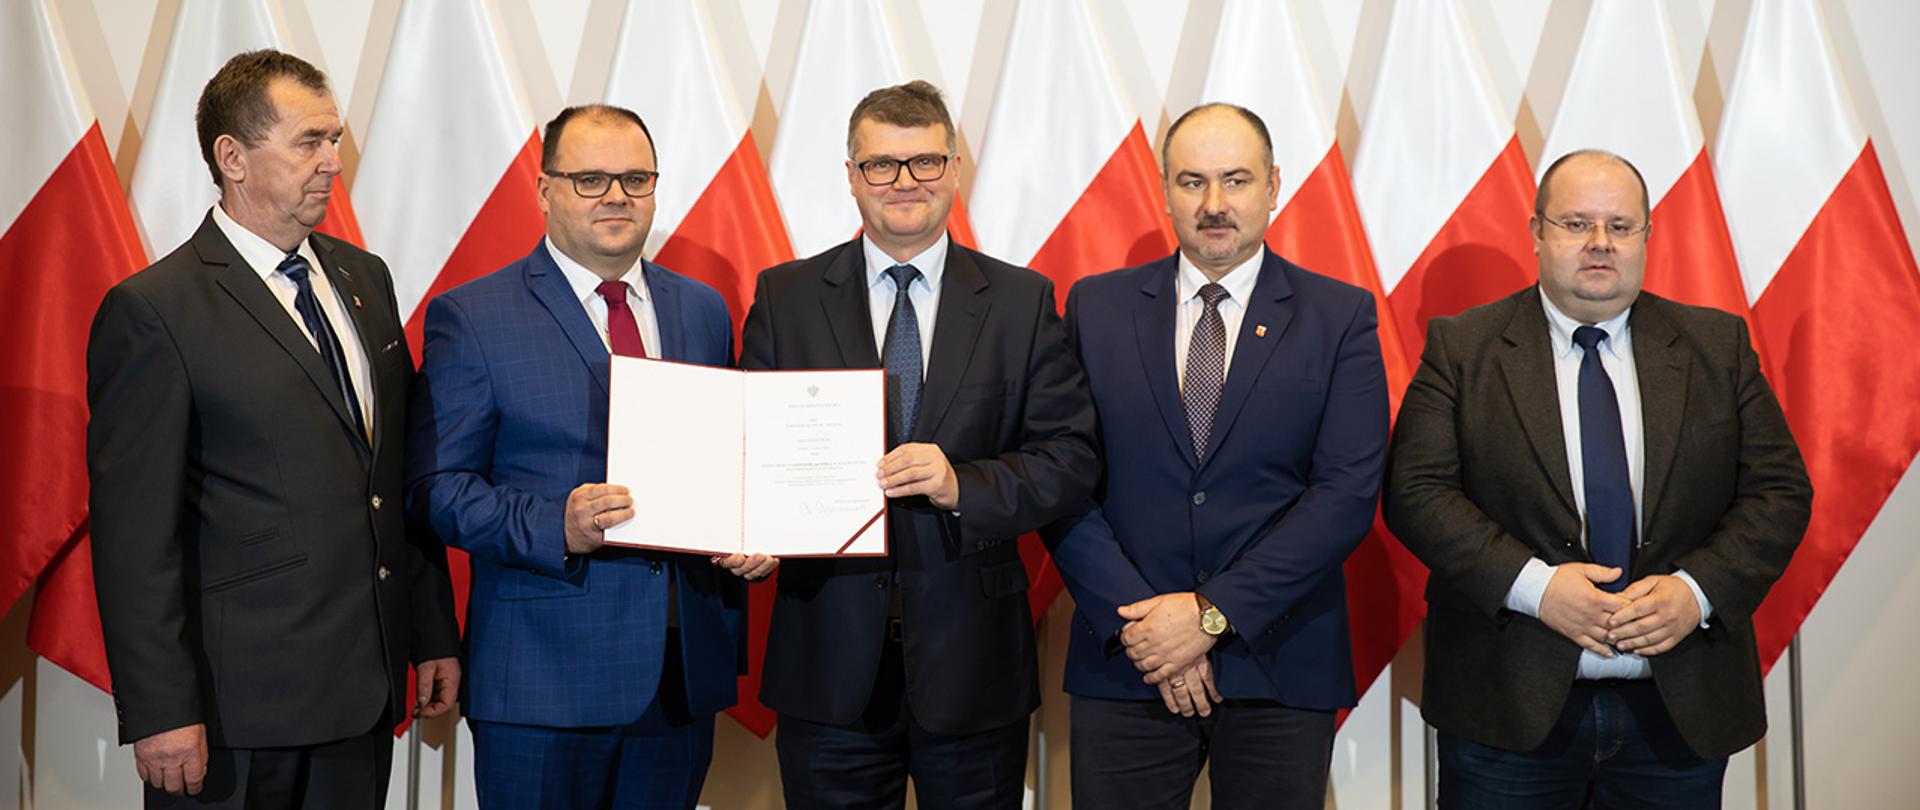 Nadanie praw miejskich miejscowości Czerwińsk